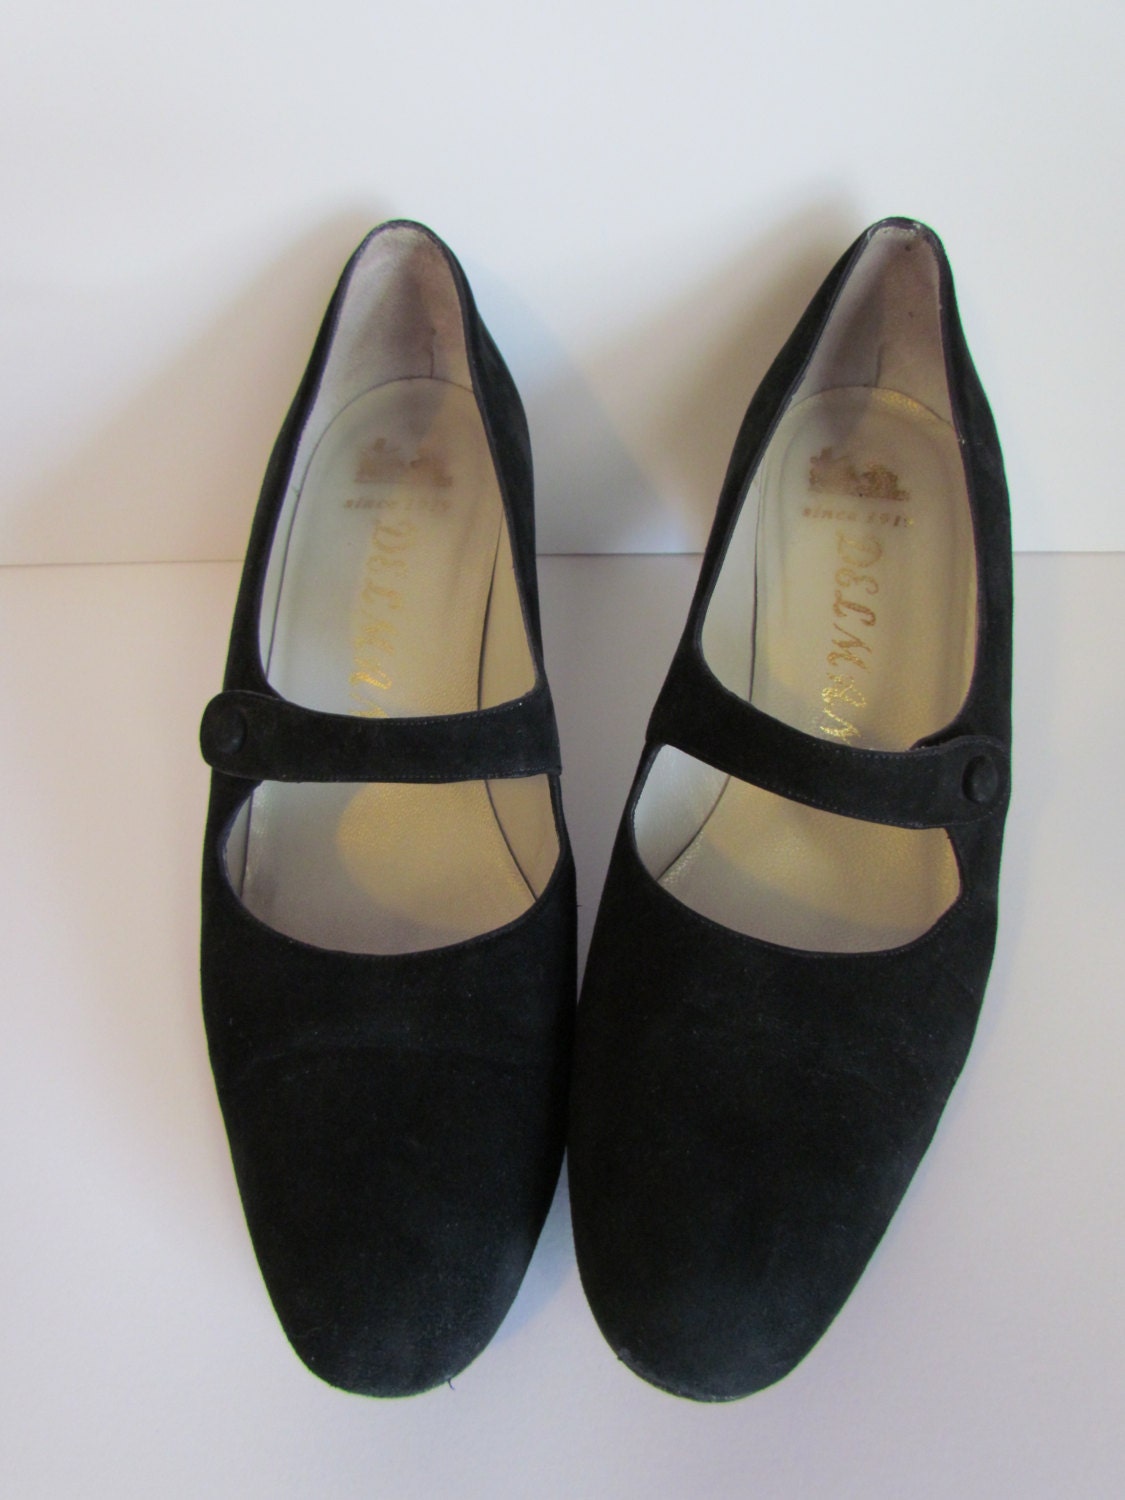 Vintage Shoes 1980s Delman Mary Janes Designer Black